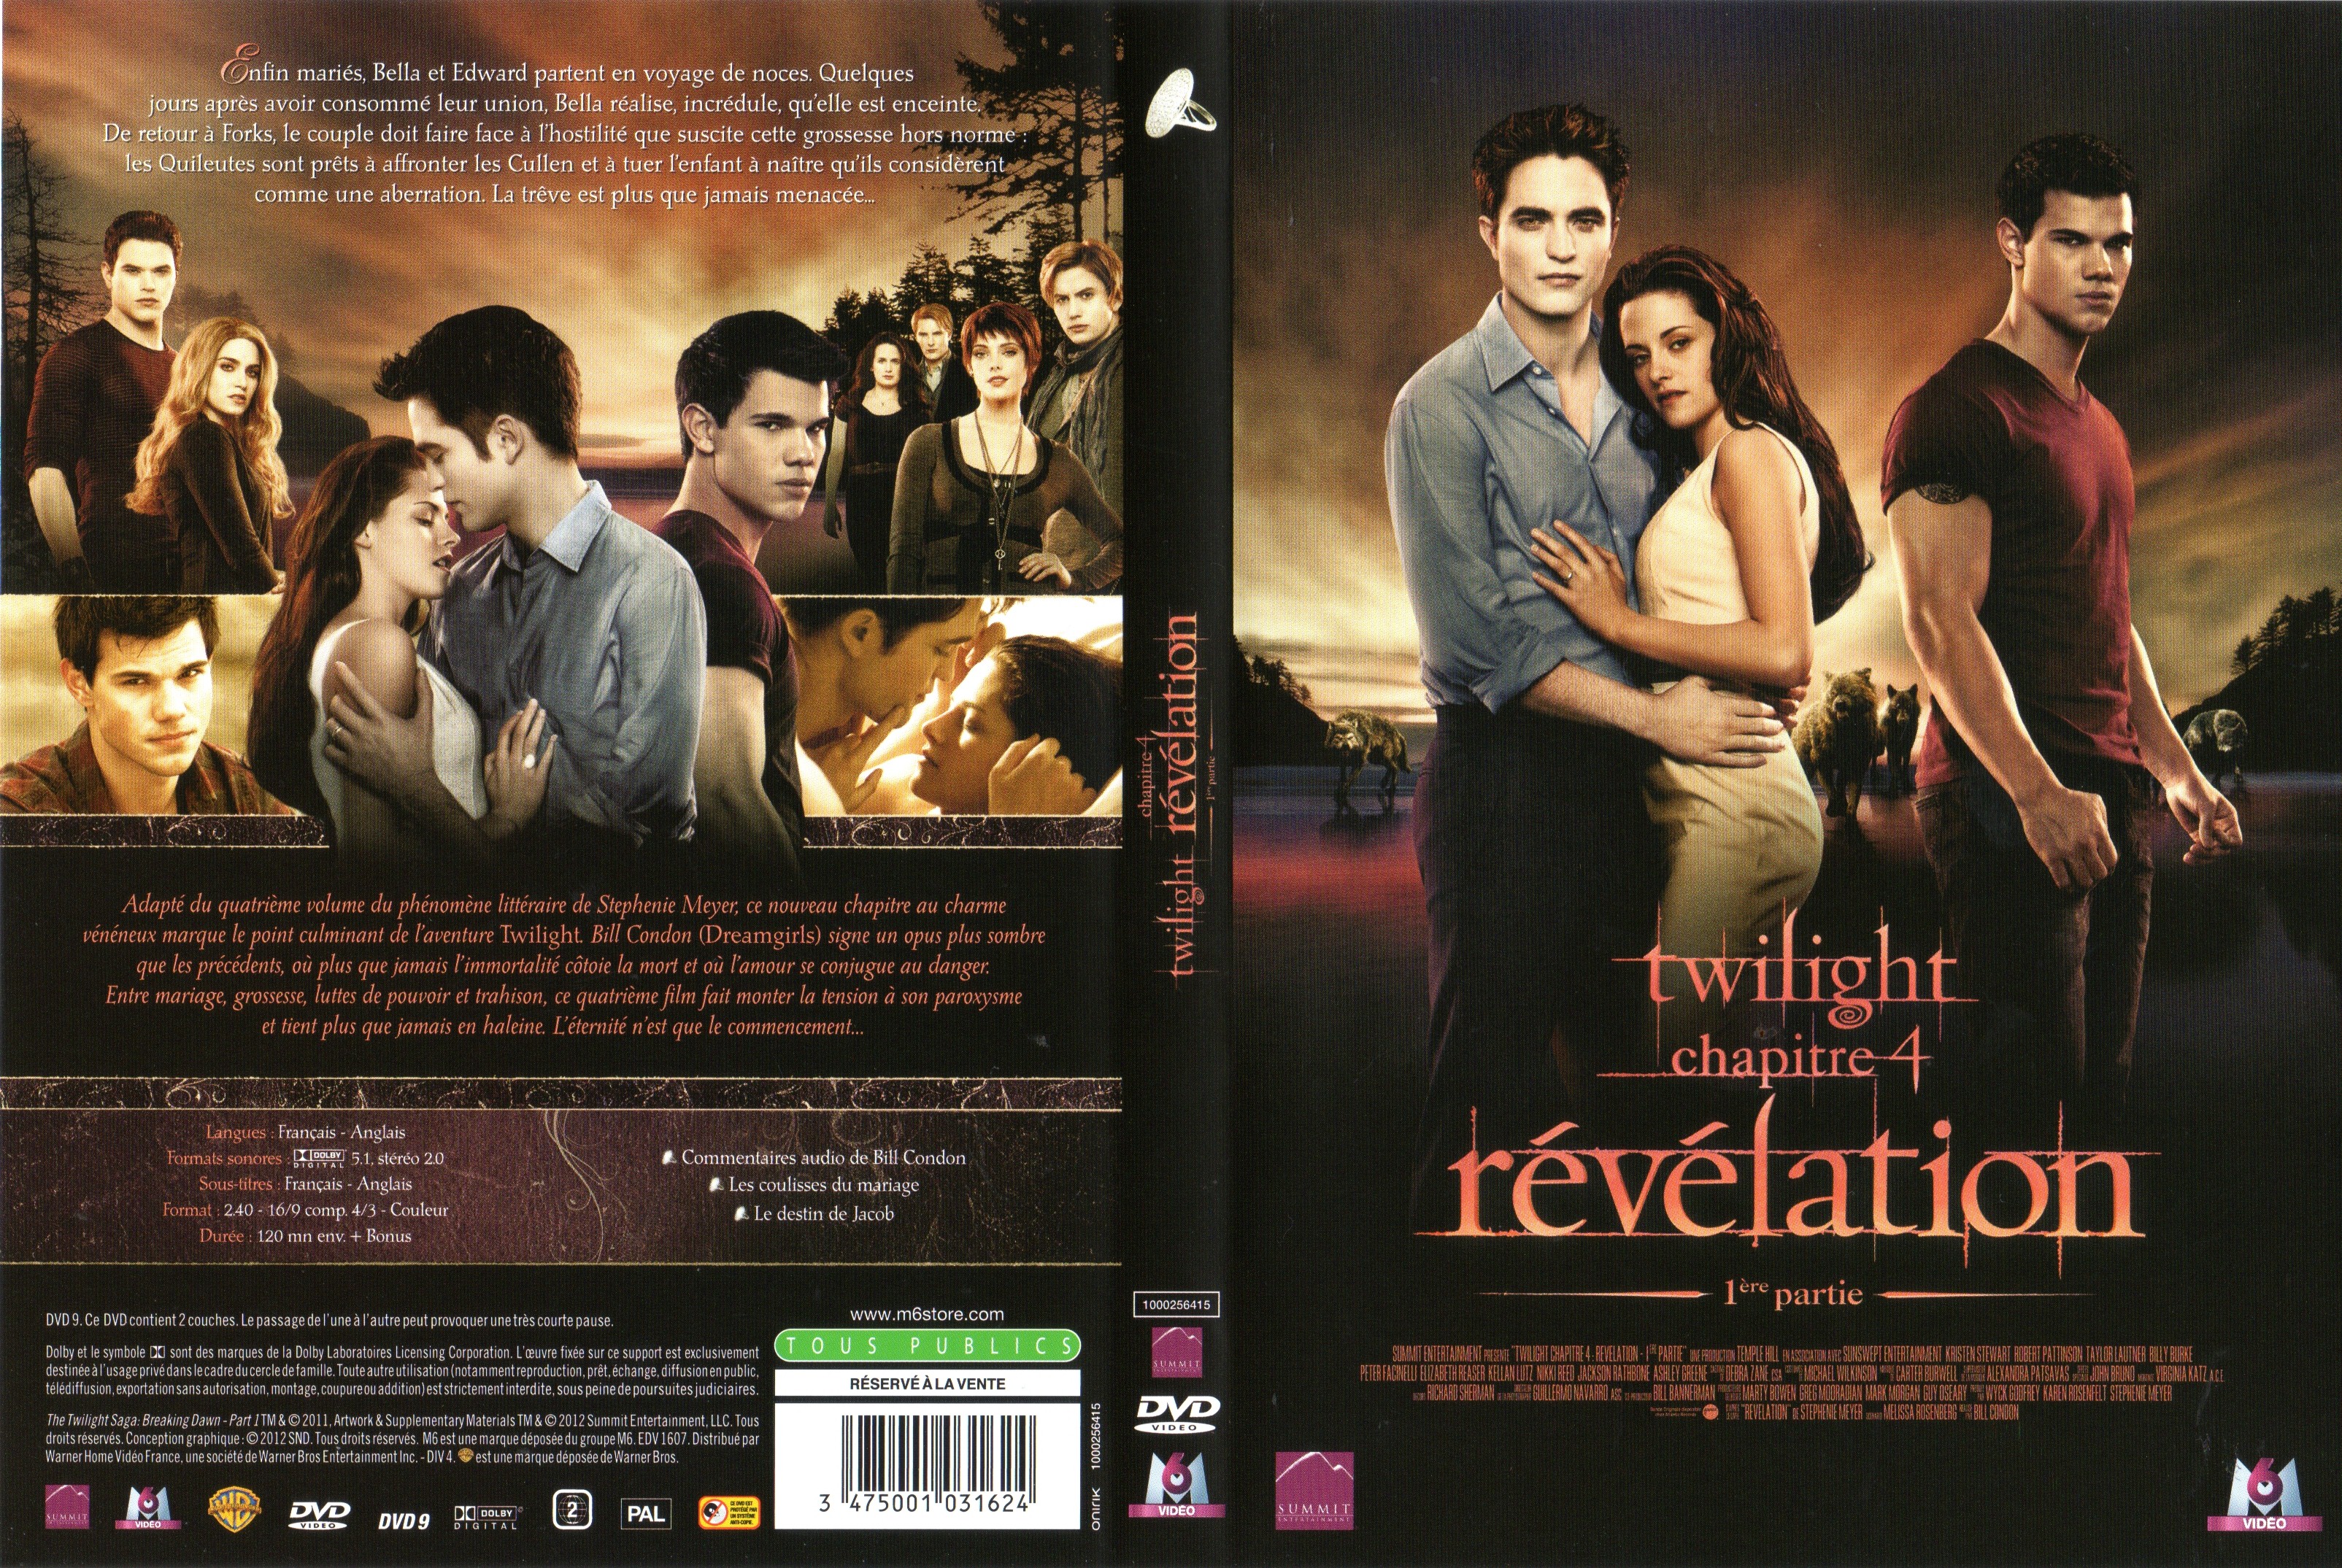 Jaquette DVD Twilight Chapitre 4 : Rvlation 1re partie v2